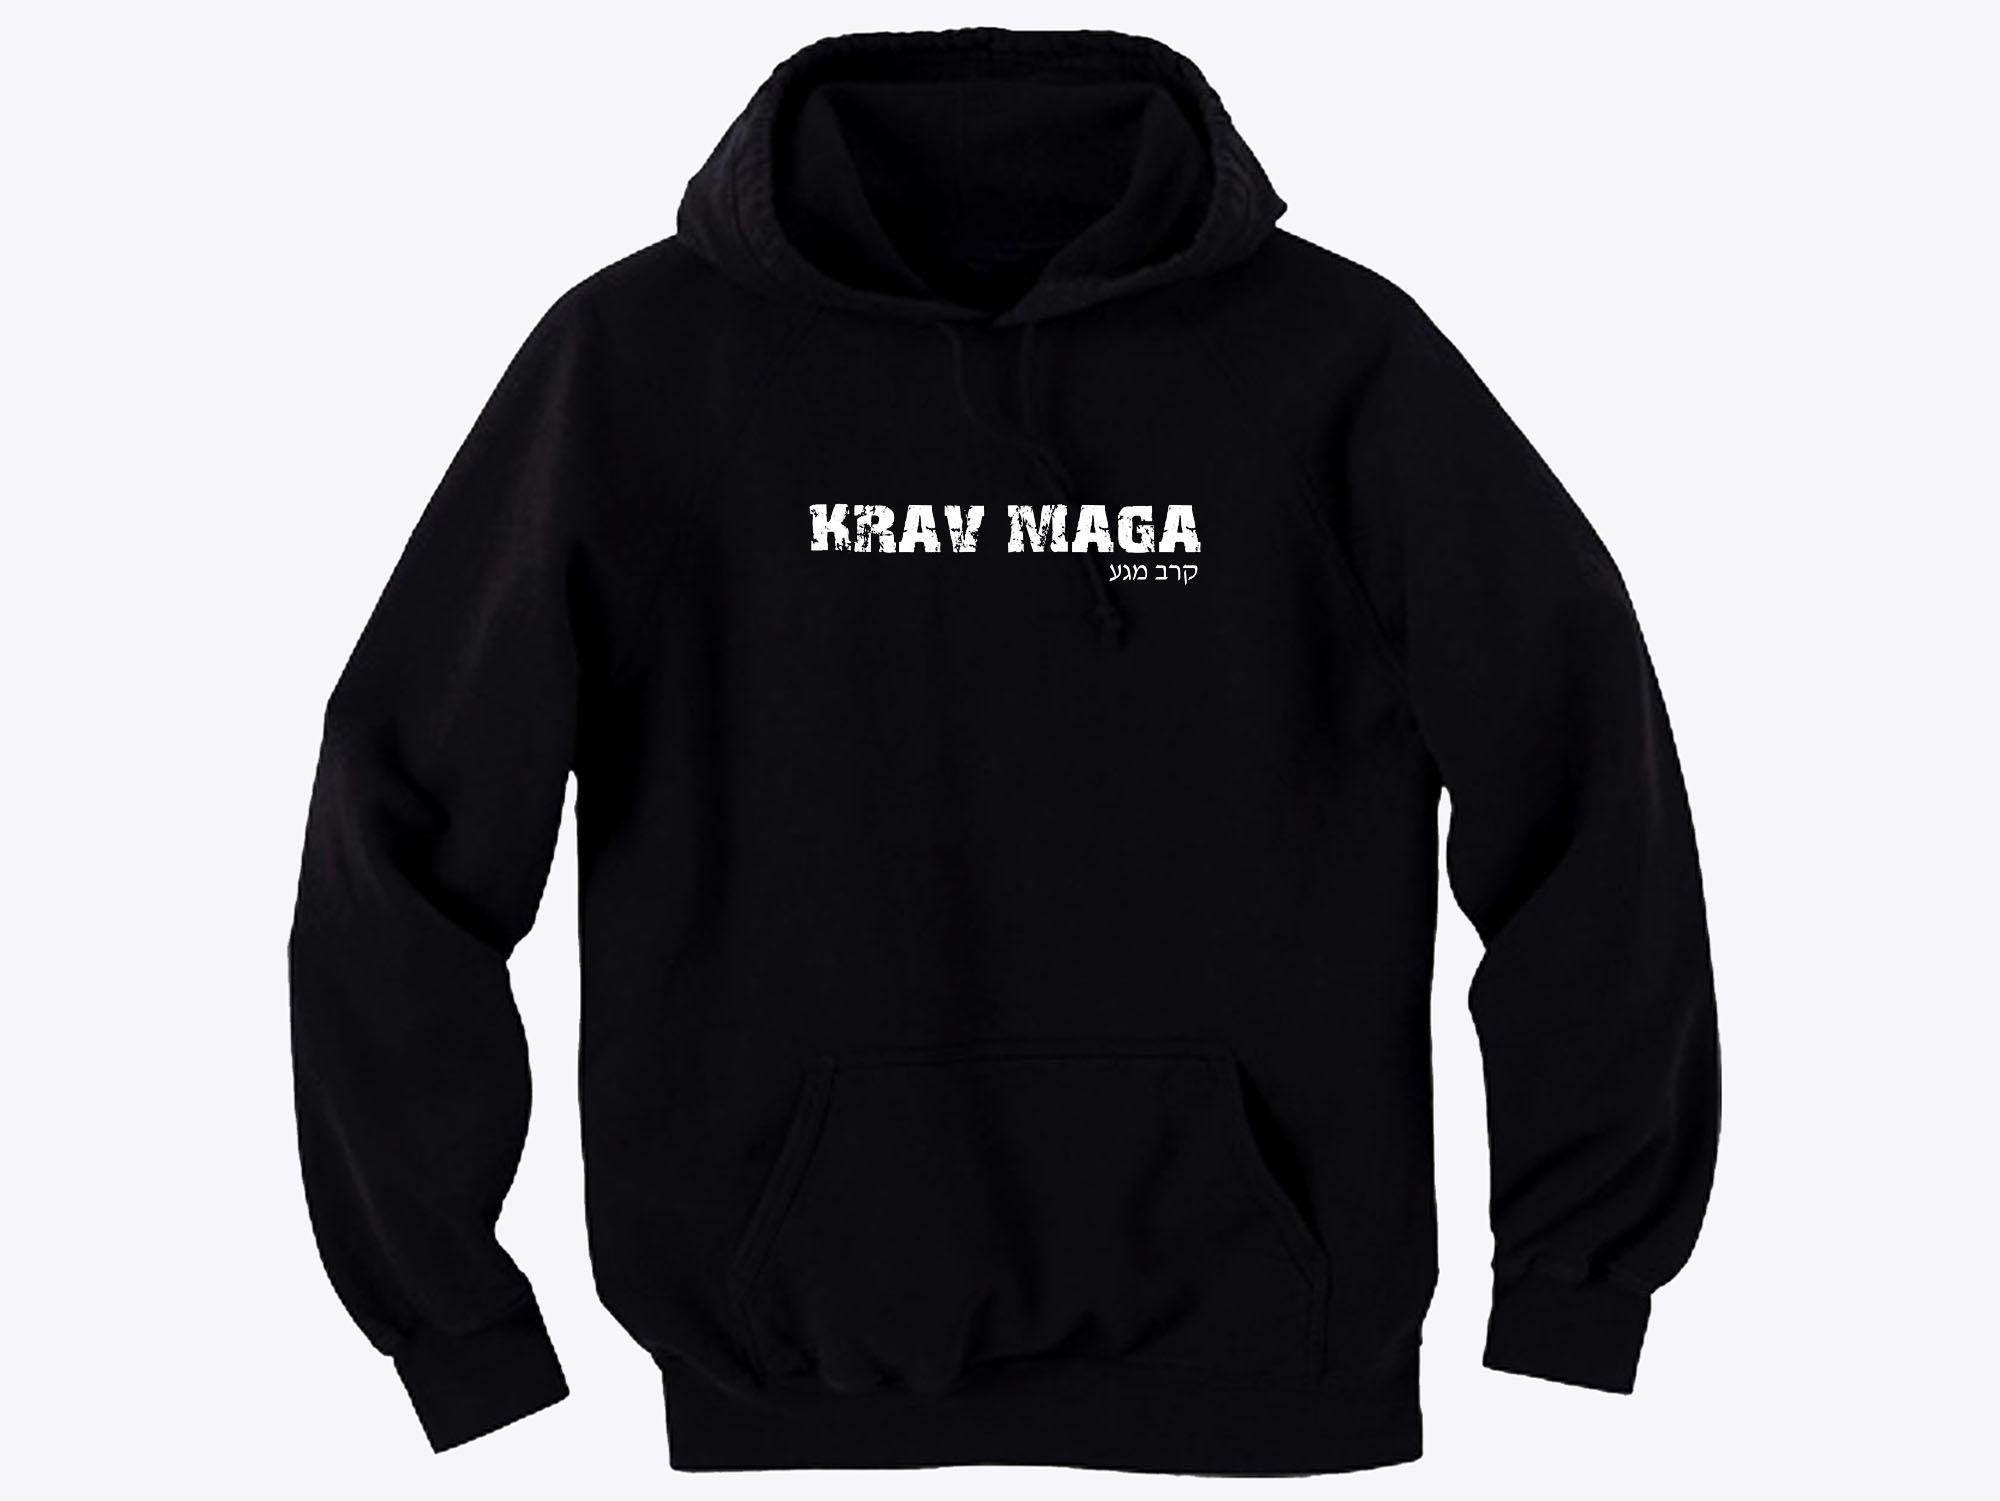 Krav Maga distressed look hoodie